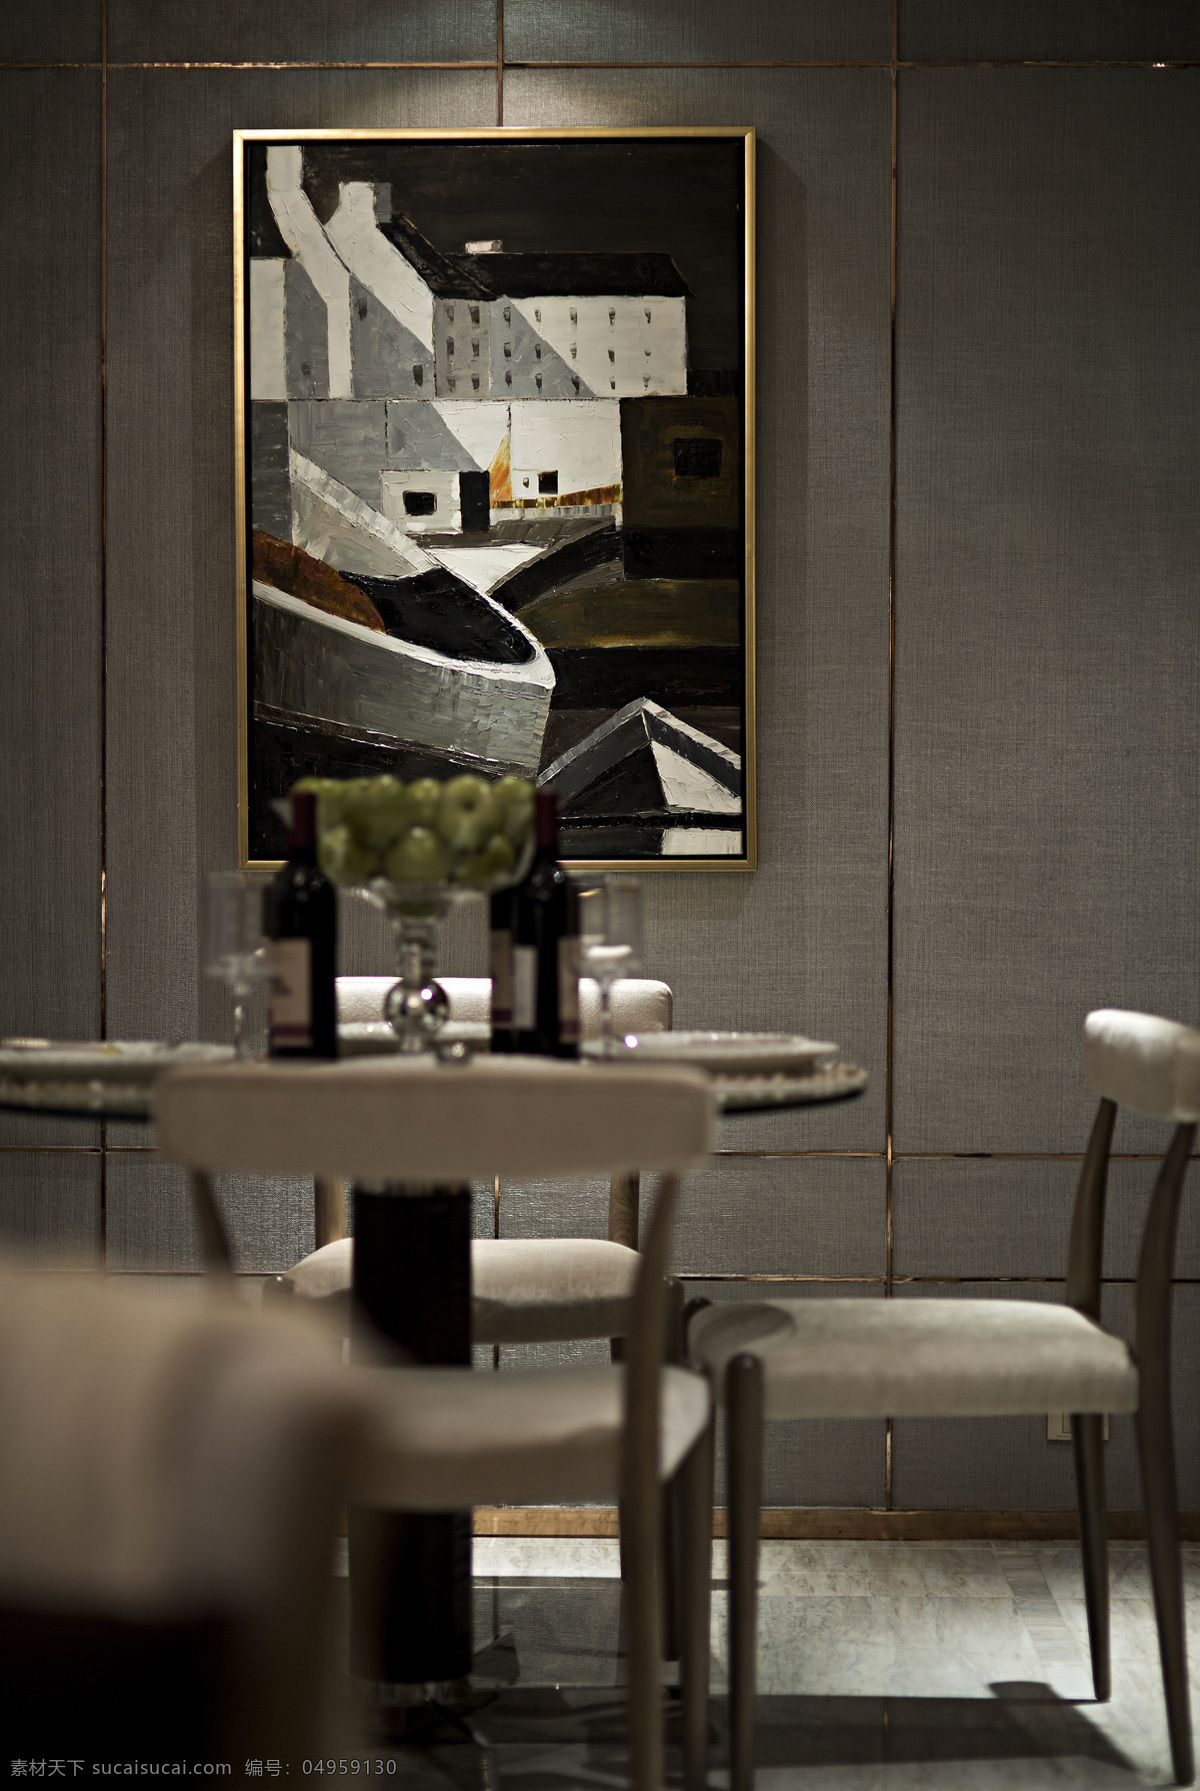 欧式 经典 沉稳 餐厅 装饰画 效果图 装饰画效果图 挂画 室内设计